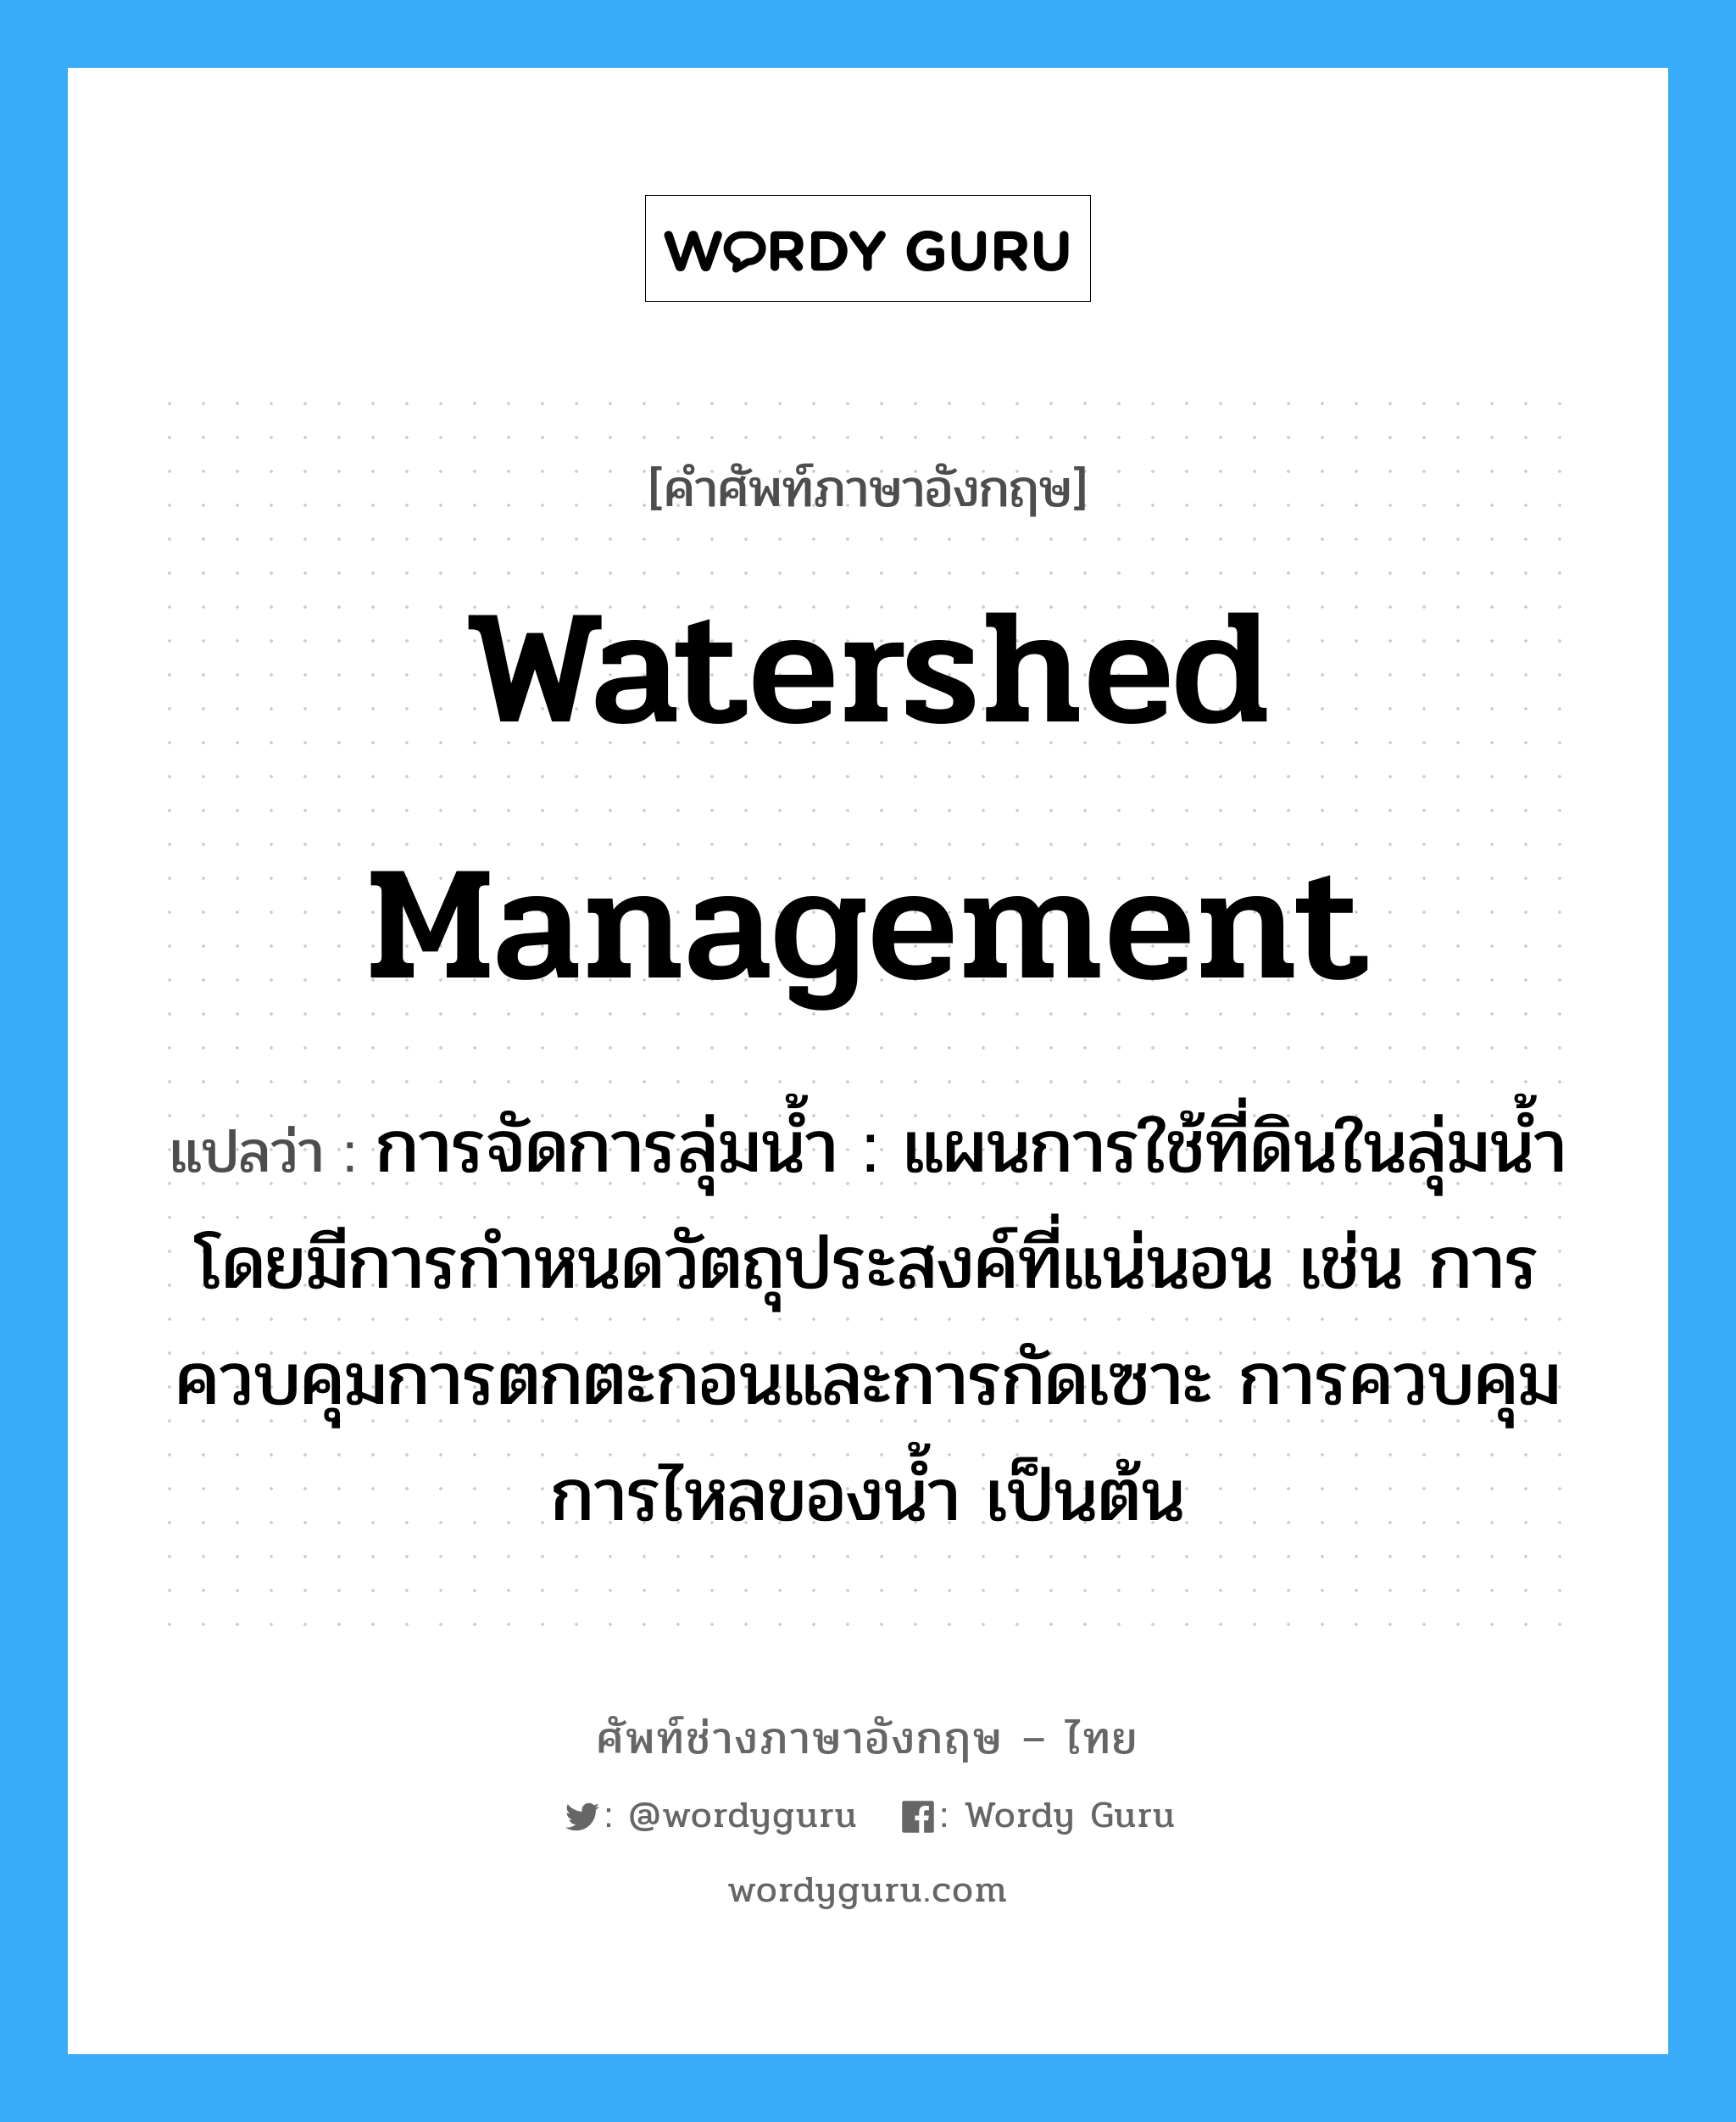 watershed management แปลว่า?, คำศัพท์ช่างภาษาอังกฤษ - ไทย watershed management คำศัพท์ภาษาอังกฤษ watershed management แปลว่า การจัดการลุ่มน้ำ : แผนการใช้ที่ดินในลุ่มน้ำโดยมีการกำหนดวัตถุประสงค์ที่แน่นอน เช่น การควบคุมการตกตะกอนและการกัดเซาะ การควบคุมการไหลของน้ำ เป็นต้น